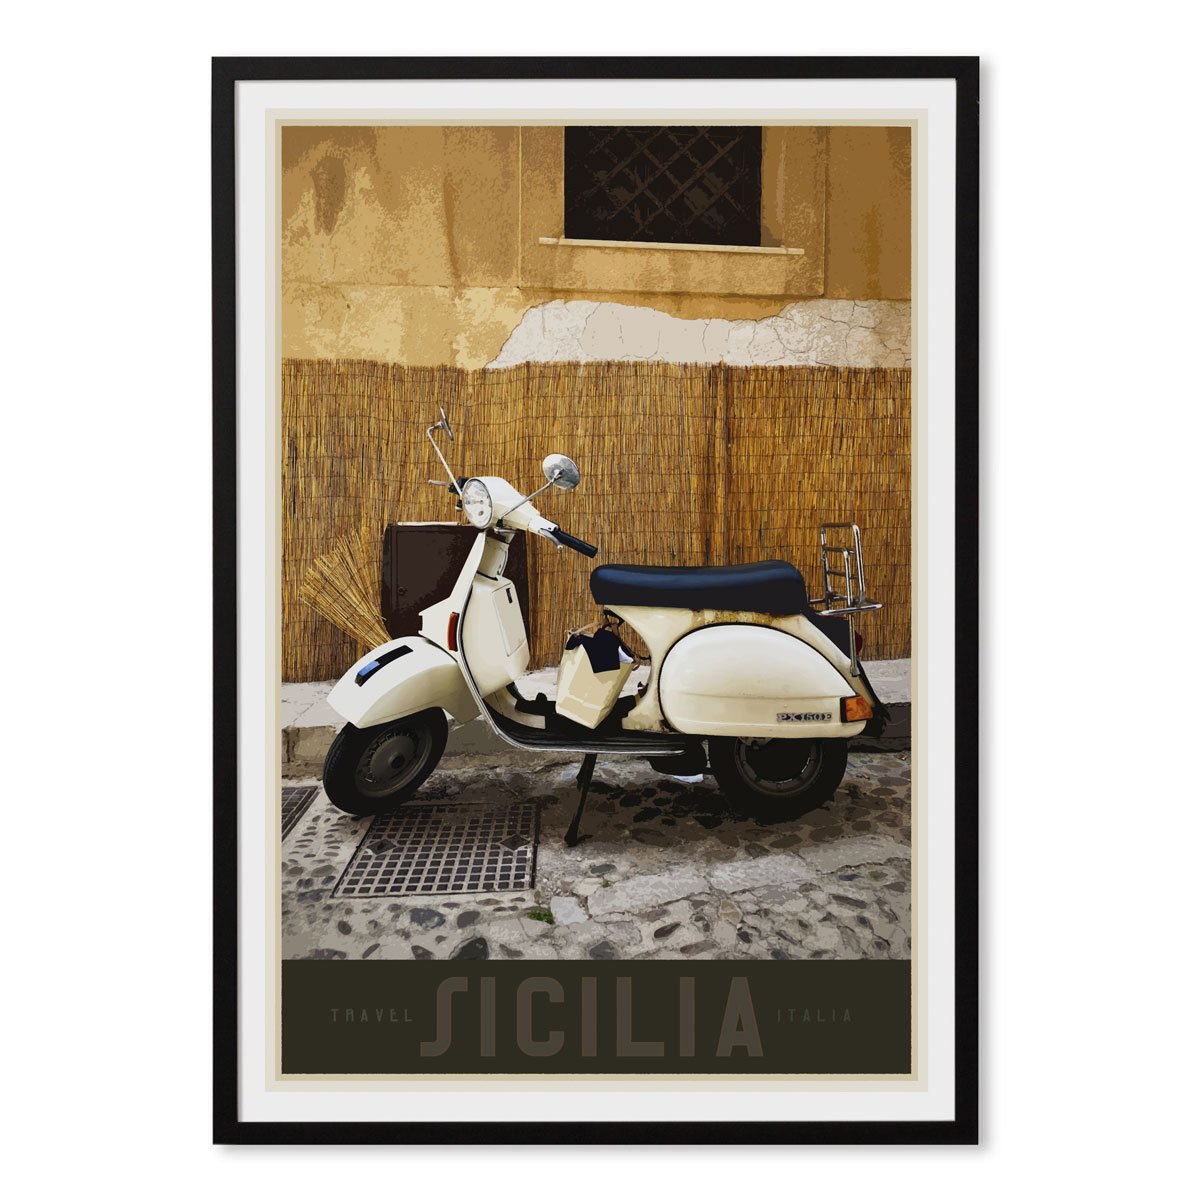 Sicily Vespa vintage travel style black framed poster designed by places we luv